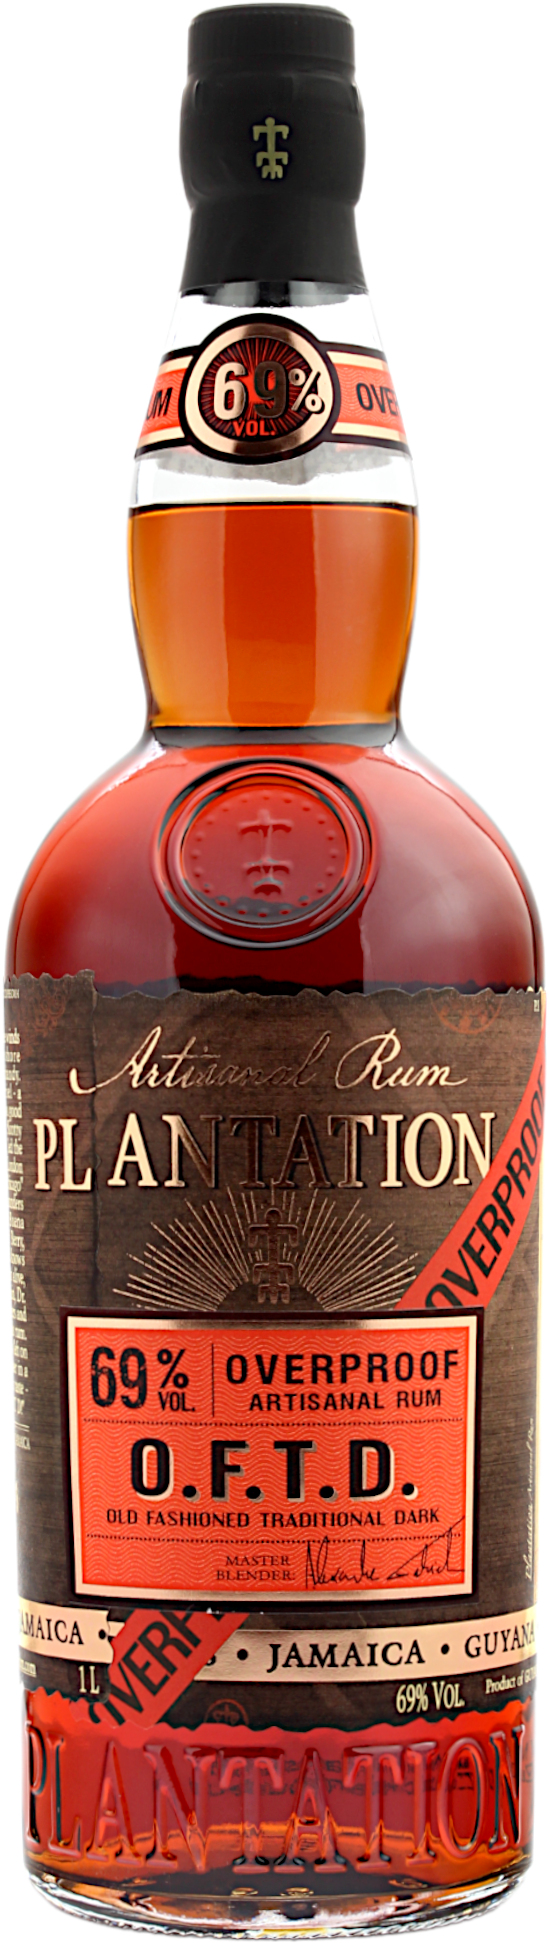 Plantation Rum Overproof O.F.T.D. 69.0% 1 Liter